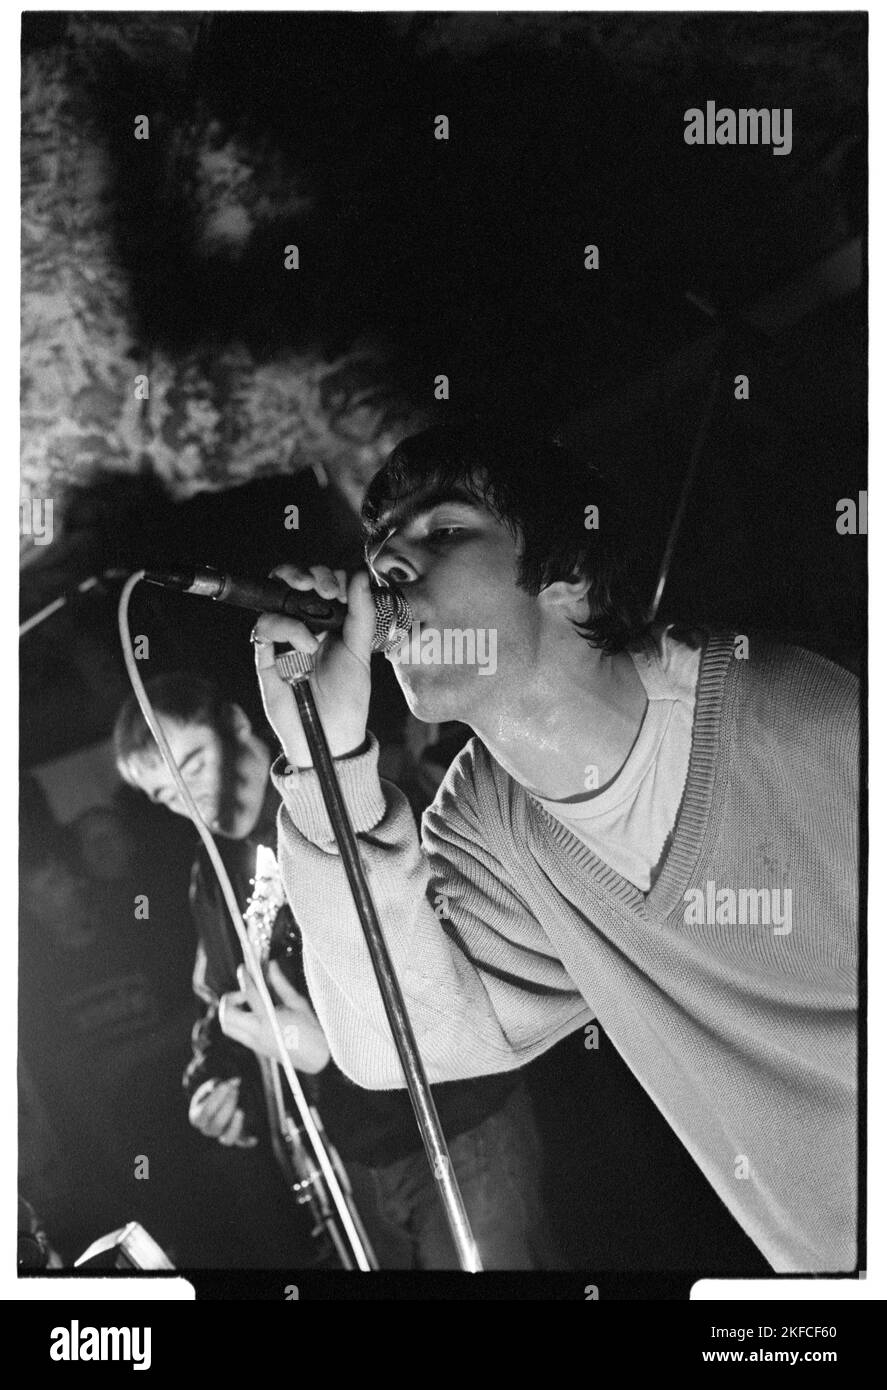 OASIS, PREMIÈRE TOURNÉE britannique EN TÊTE D'AFFICHE, 1994 : Liam Gallagher d'Oasis au légendaire TJS à Newport, pays de Galles, mai 3 1994. Photographie : Rob Watkins. Il s'agit de la première tournée nationale en tête d'affiche du groupe en soutien à leur deuxième single Shakermaker. Banque D'Images